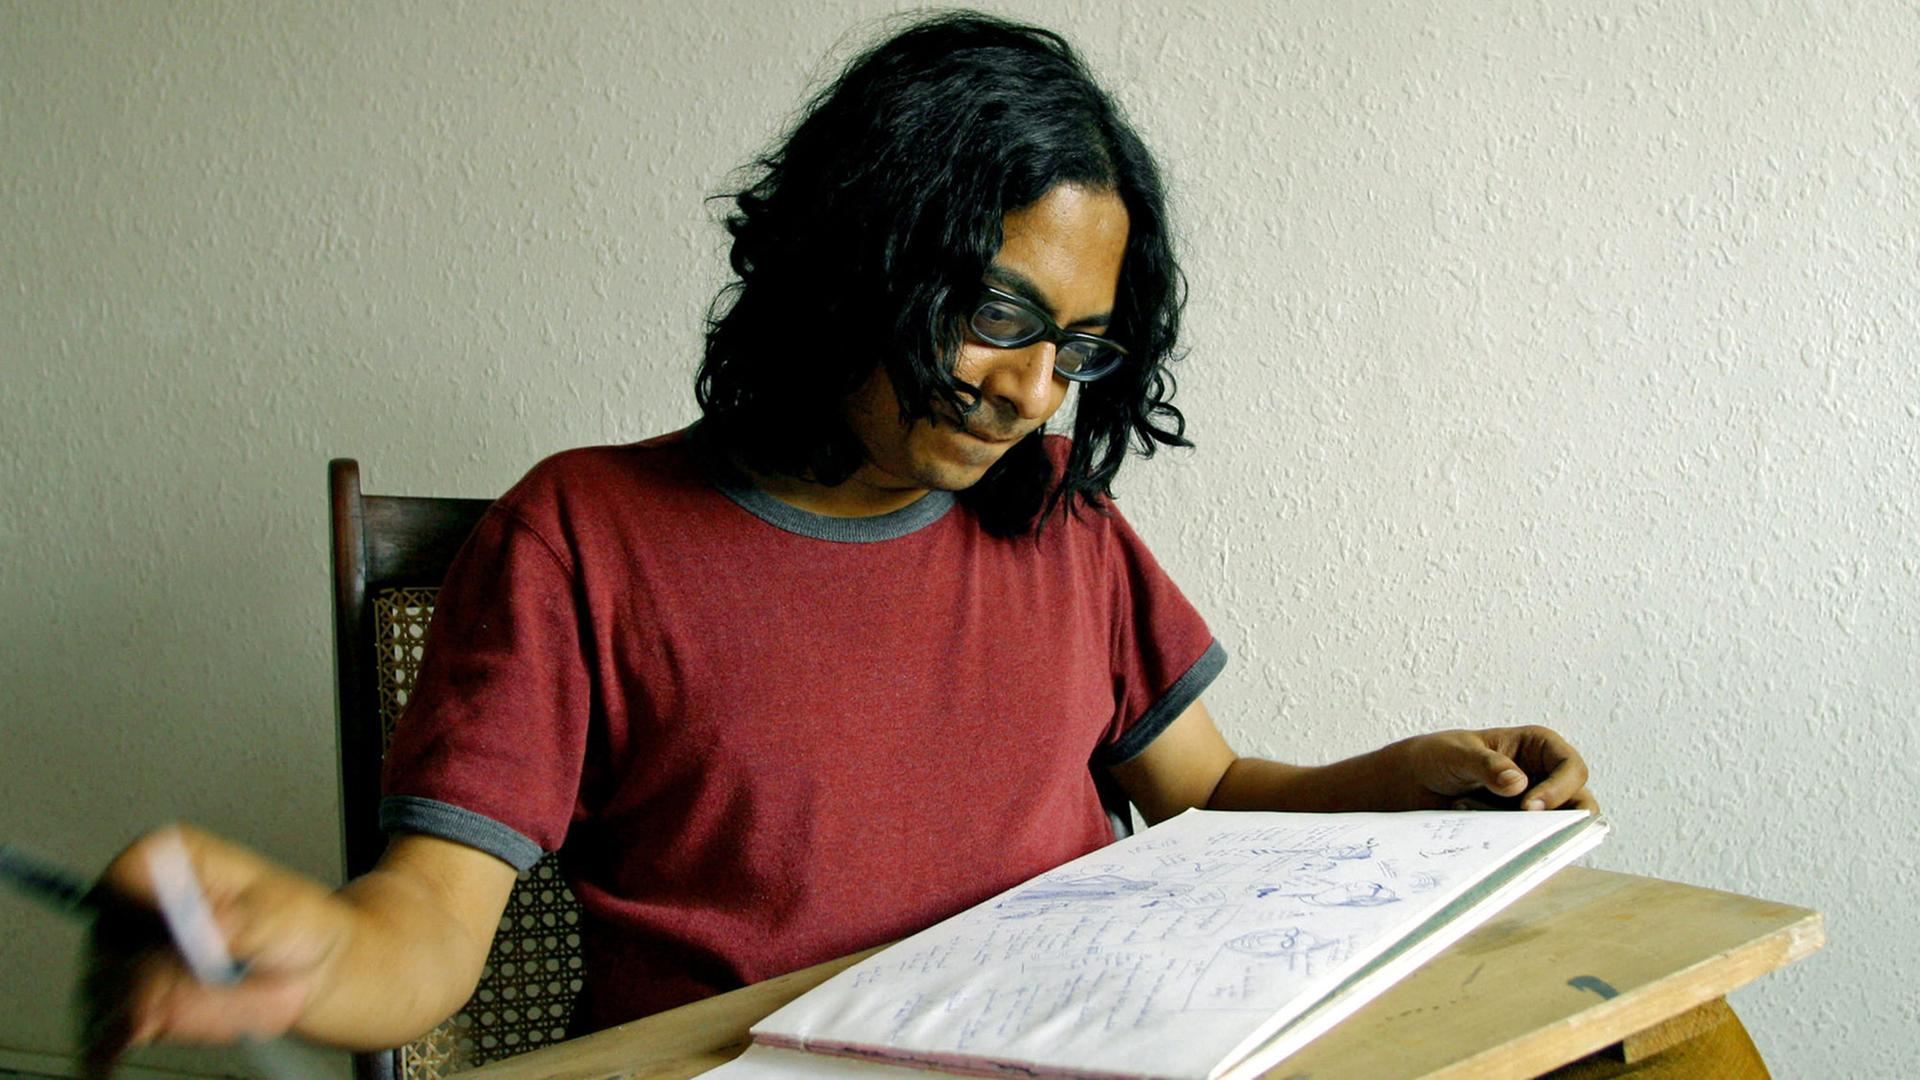 Der indische Zeichner und Autor Sarnath Banerjee mit einem Skizzenblock, aufgenommen am 7.5.2004 in Neu-Delhi, Indien